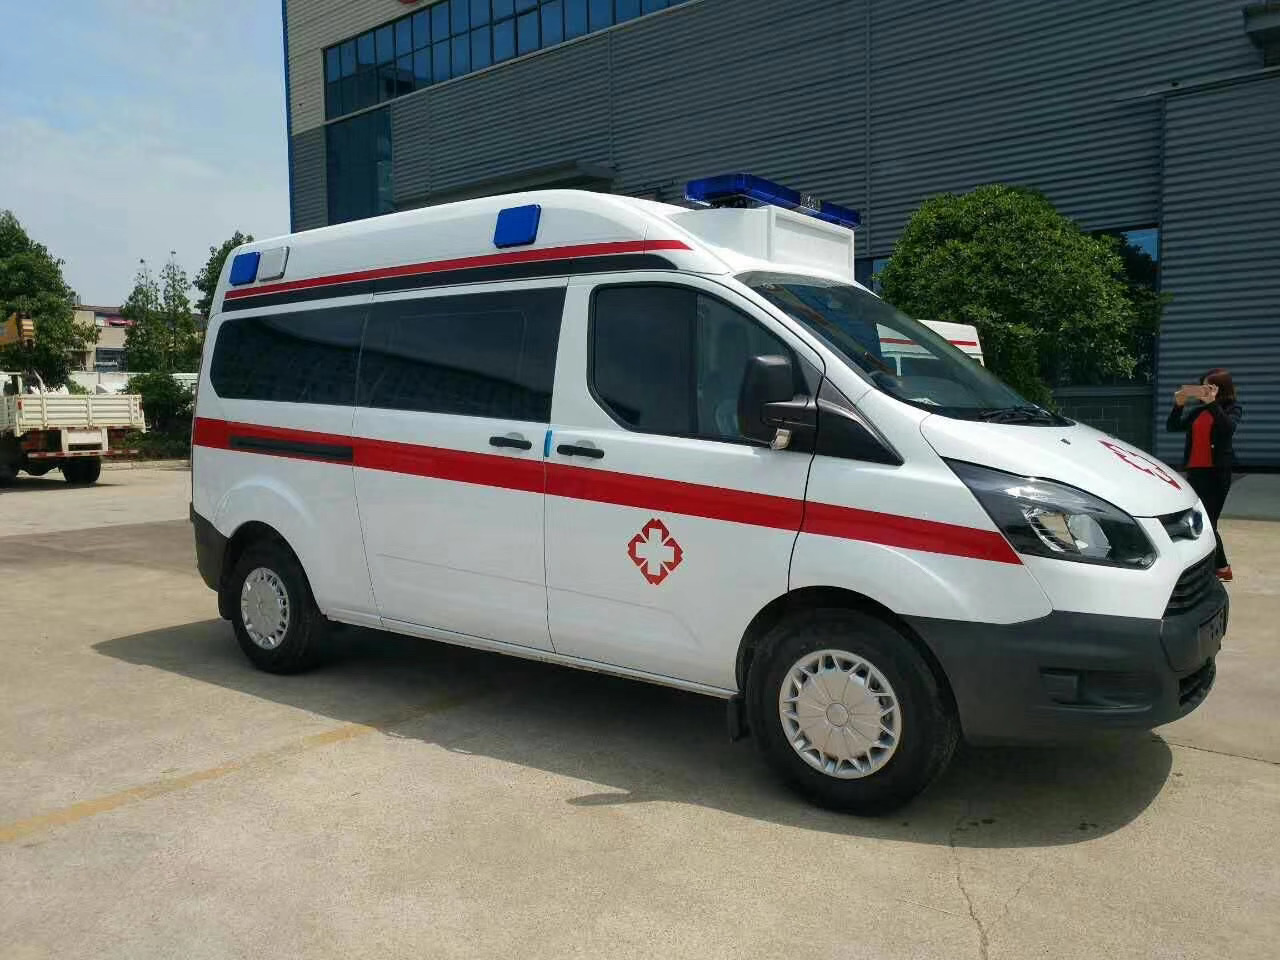 丹凤县出院转院救护车